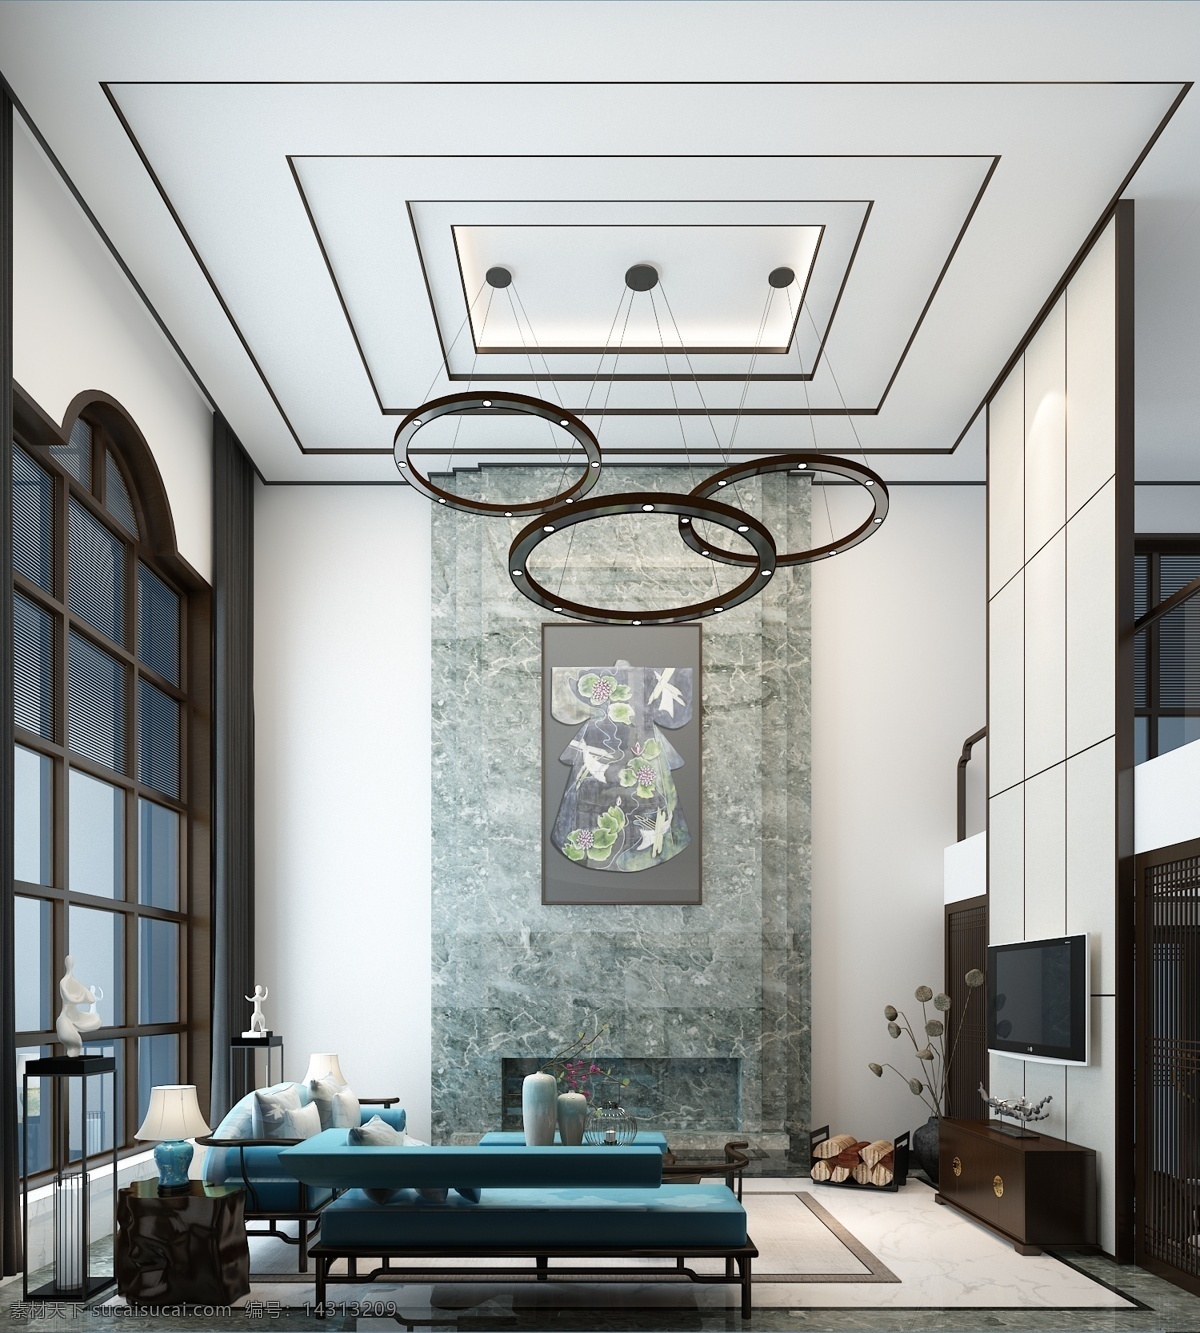 现代 时尚 客厅 三环 吊灯 室内装修 效果图 客厅装修 三环吊灯 蓝色茶几 浅色地毯